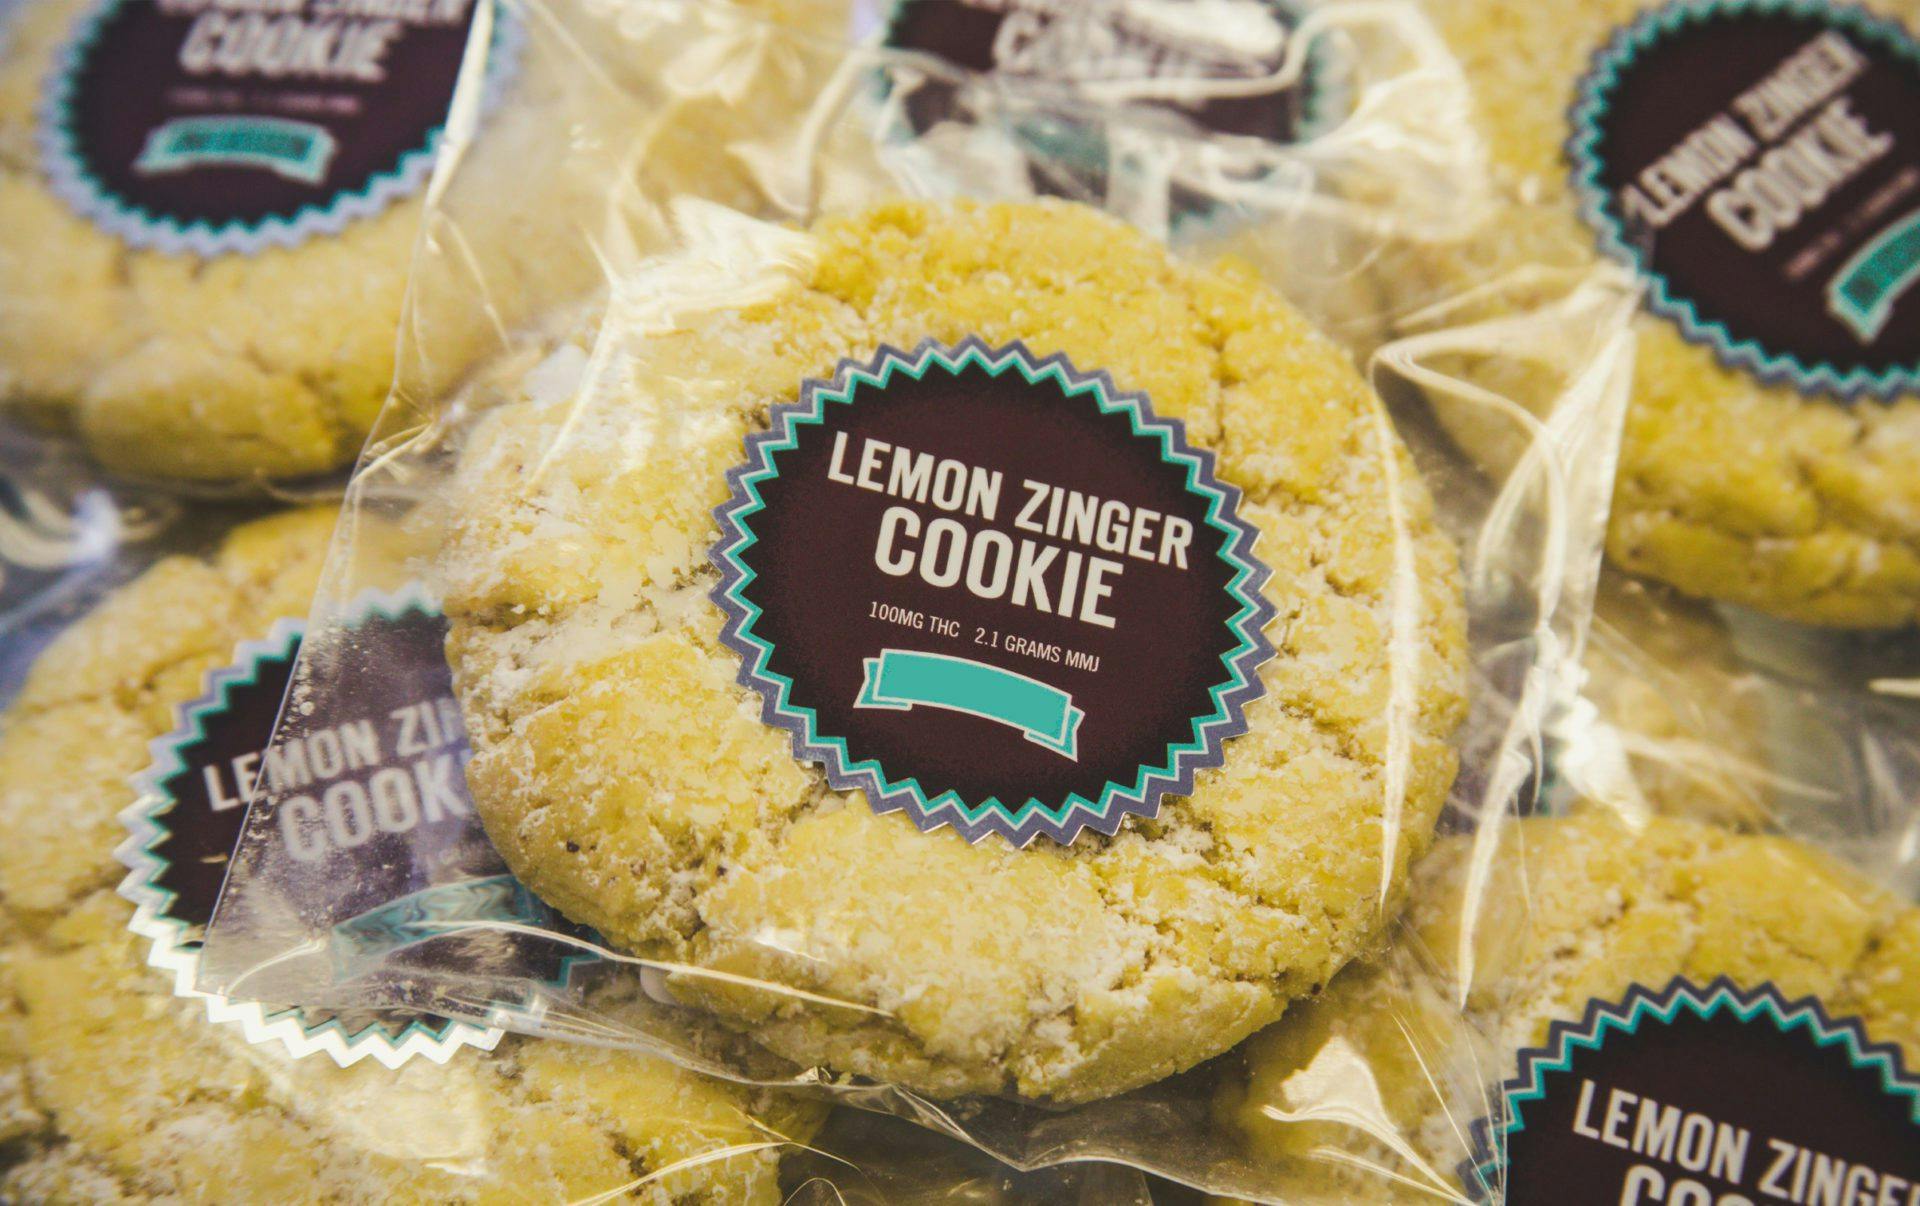 Lemon zinger cookies